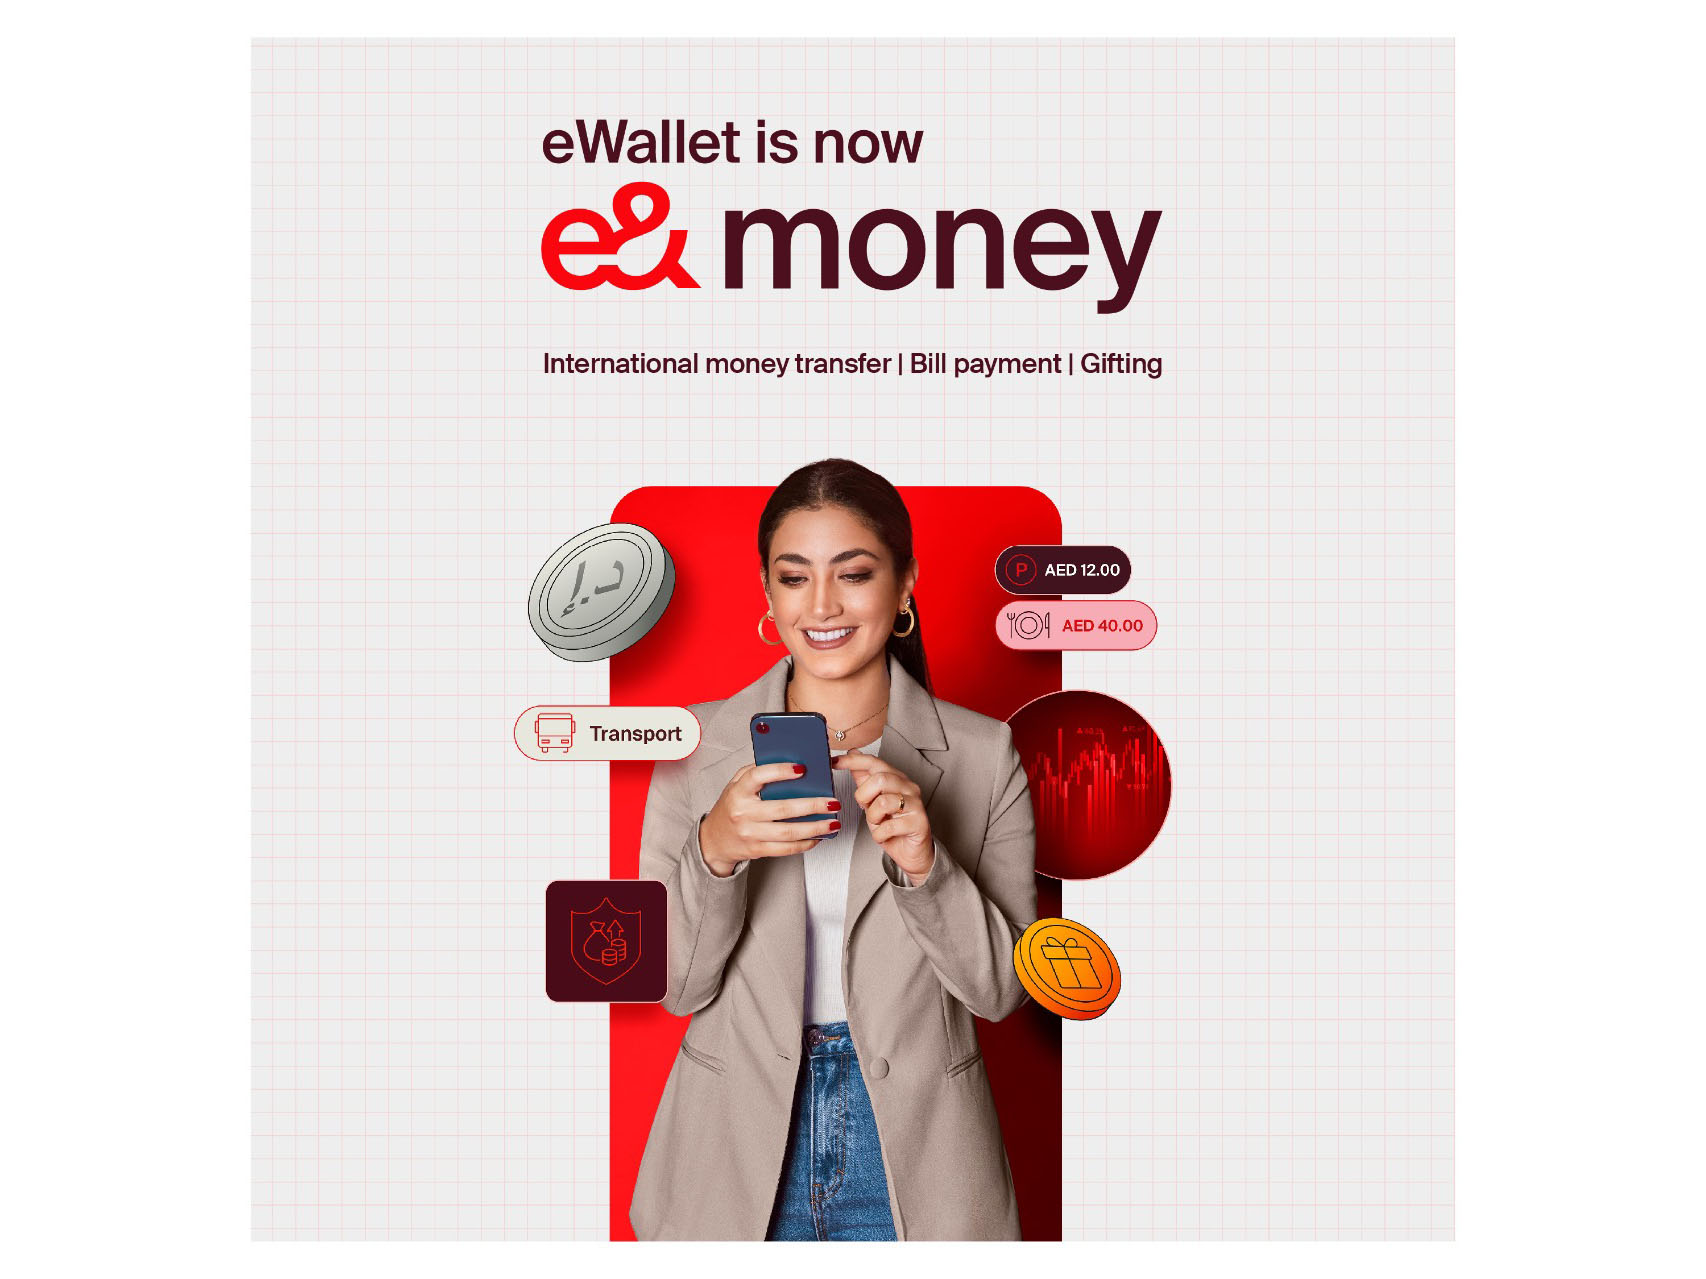 eWallet rebrands as e& money